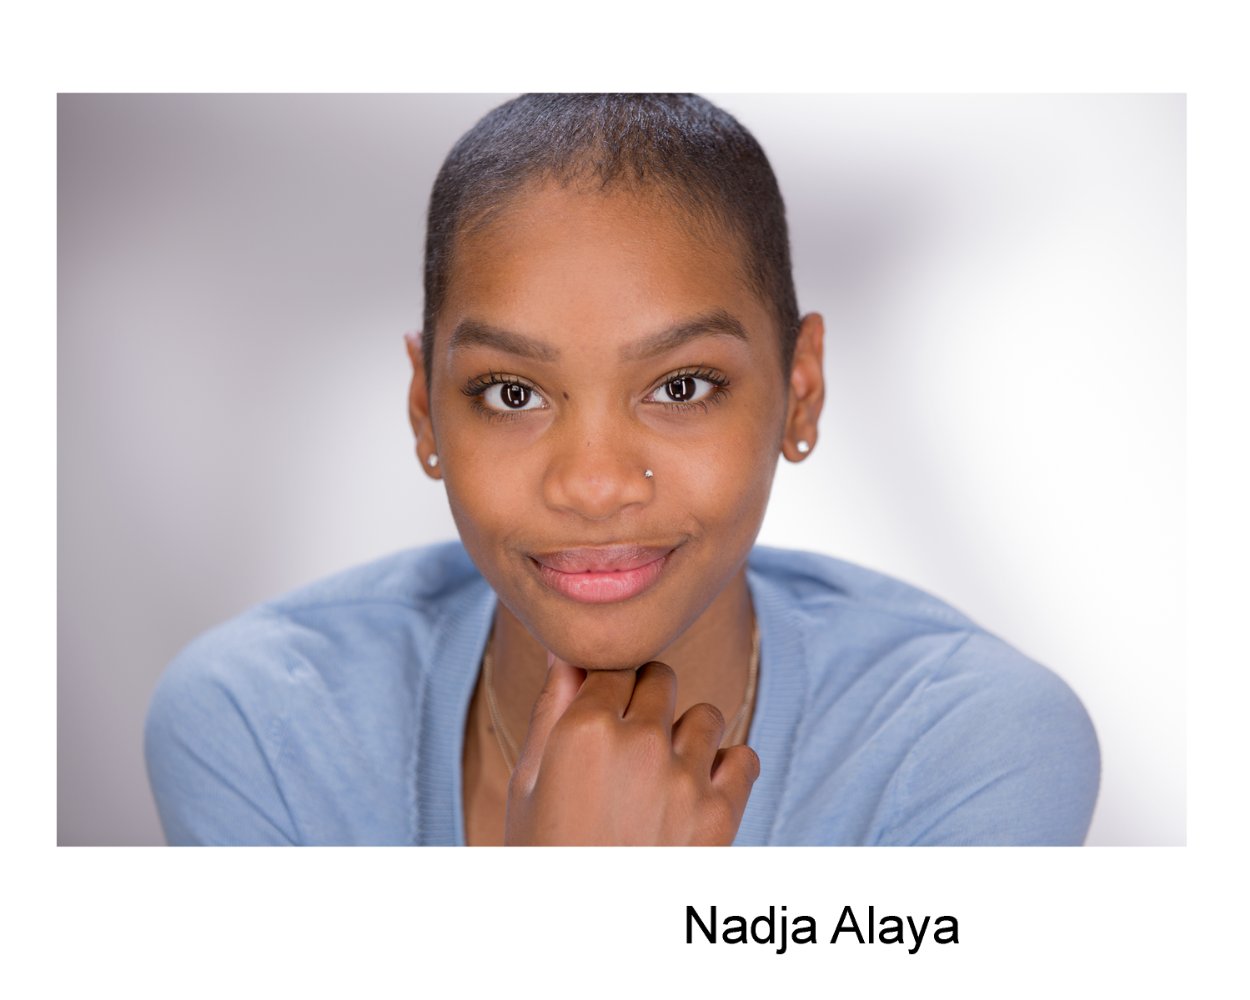 Nadja Alaya